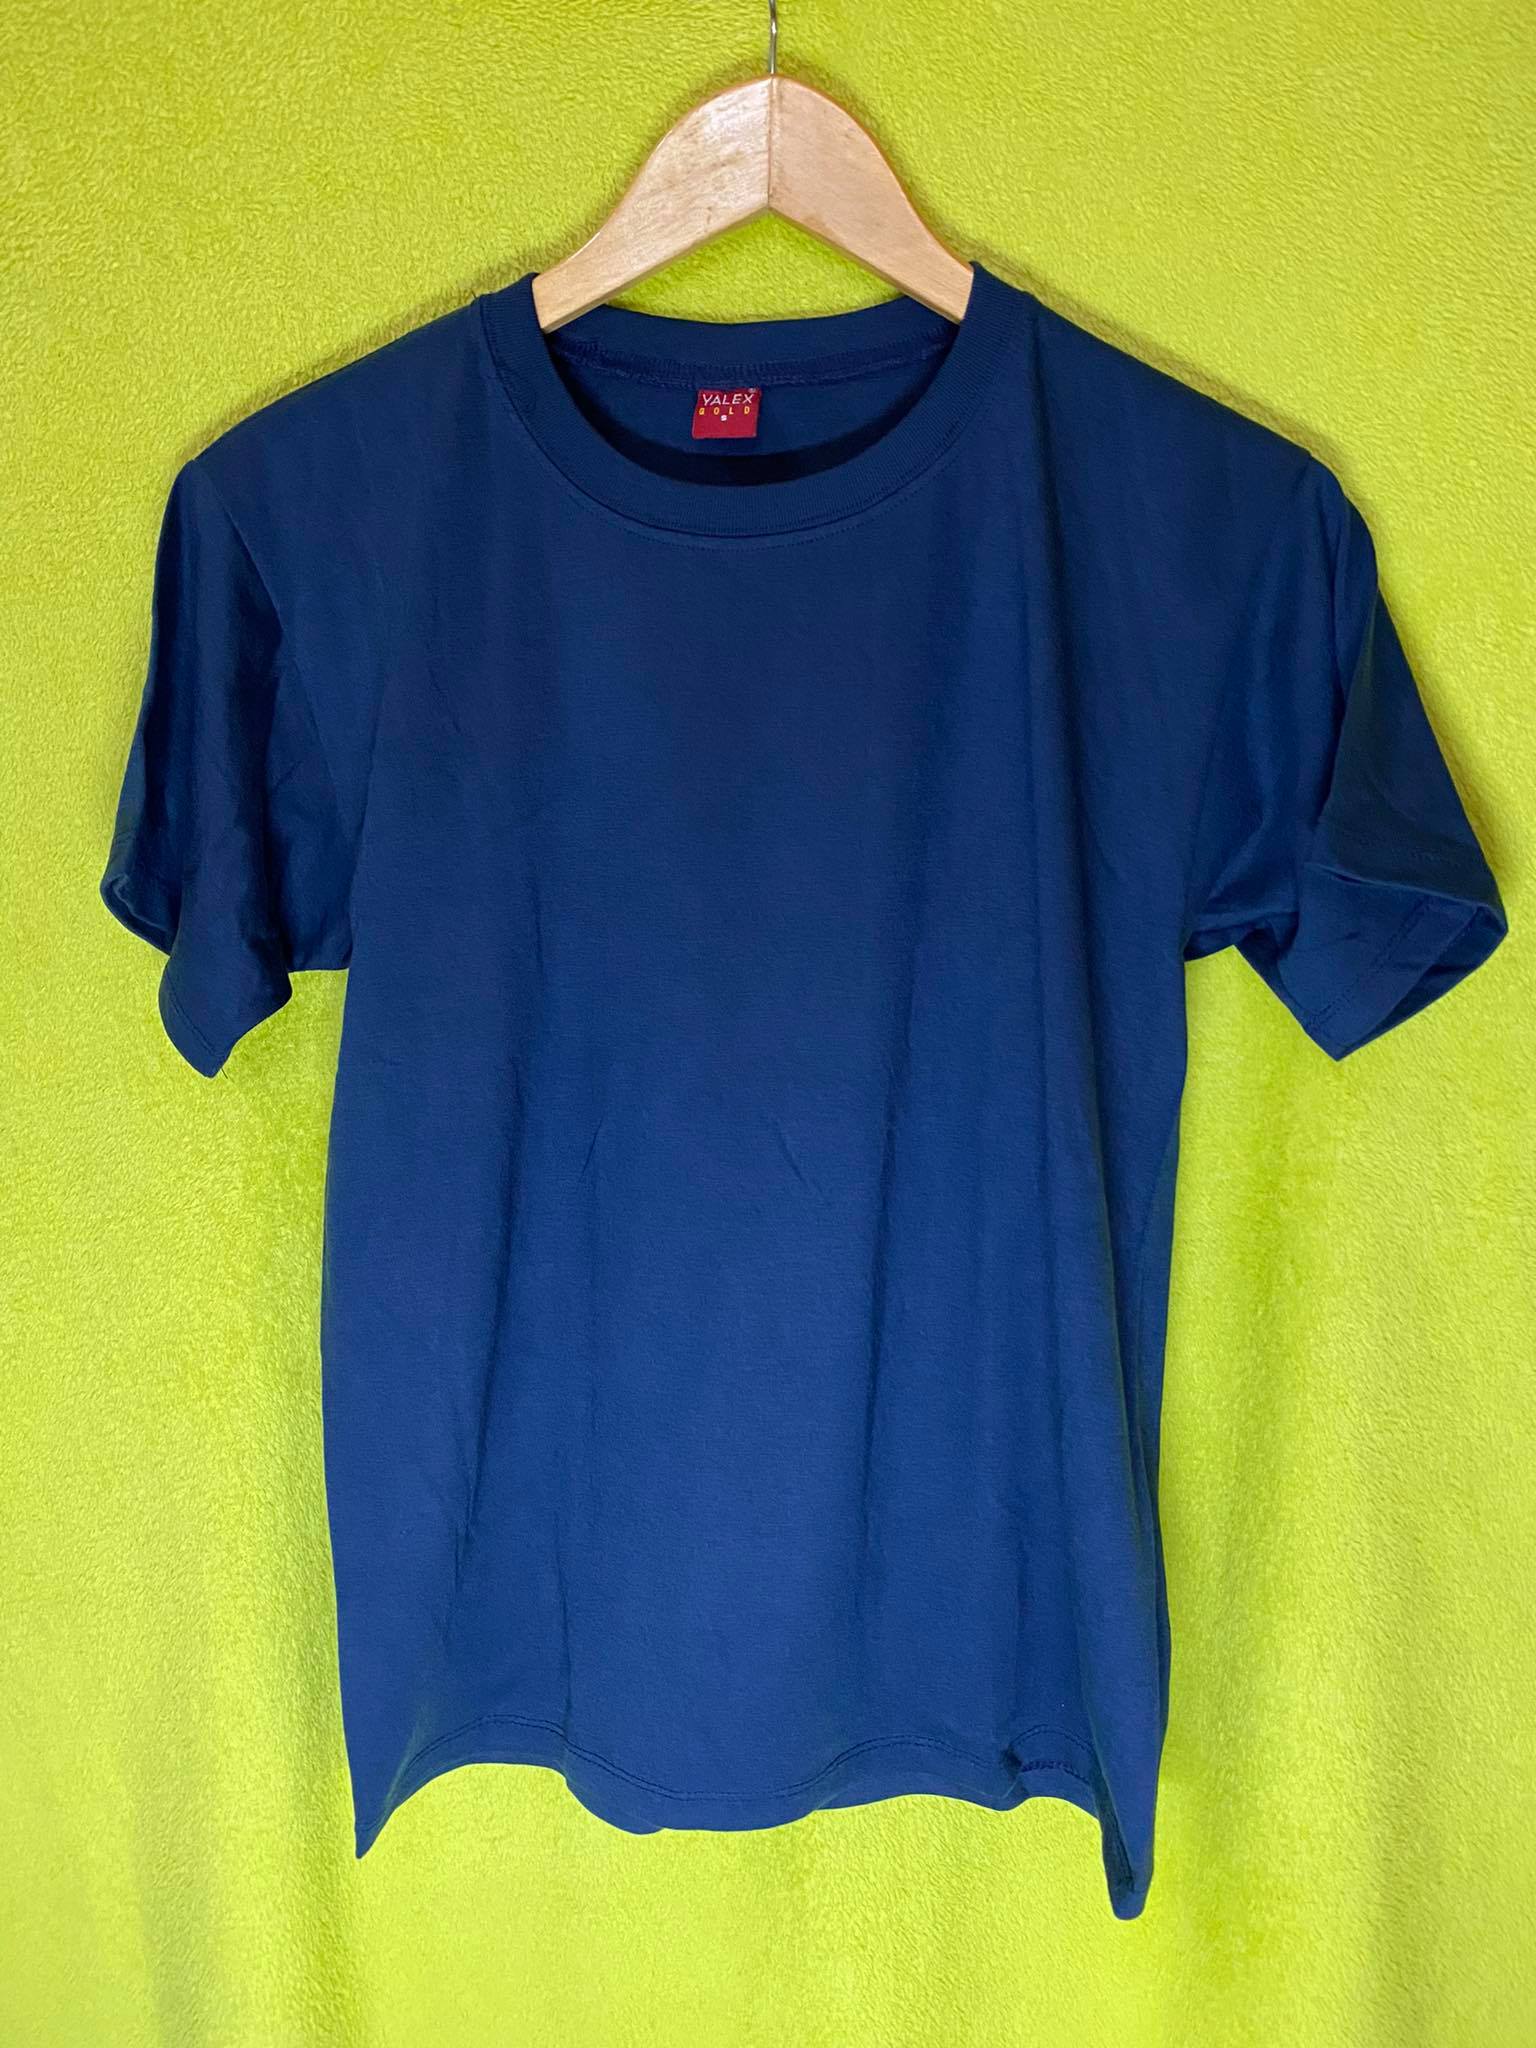 Yalex Plain Shirt Navy Blue Large Size | Lazada PH